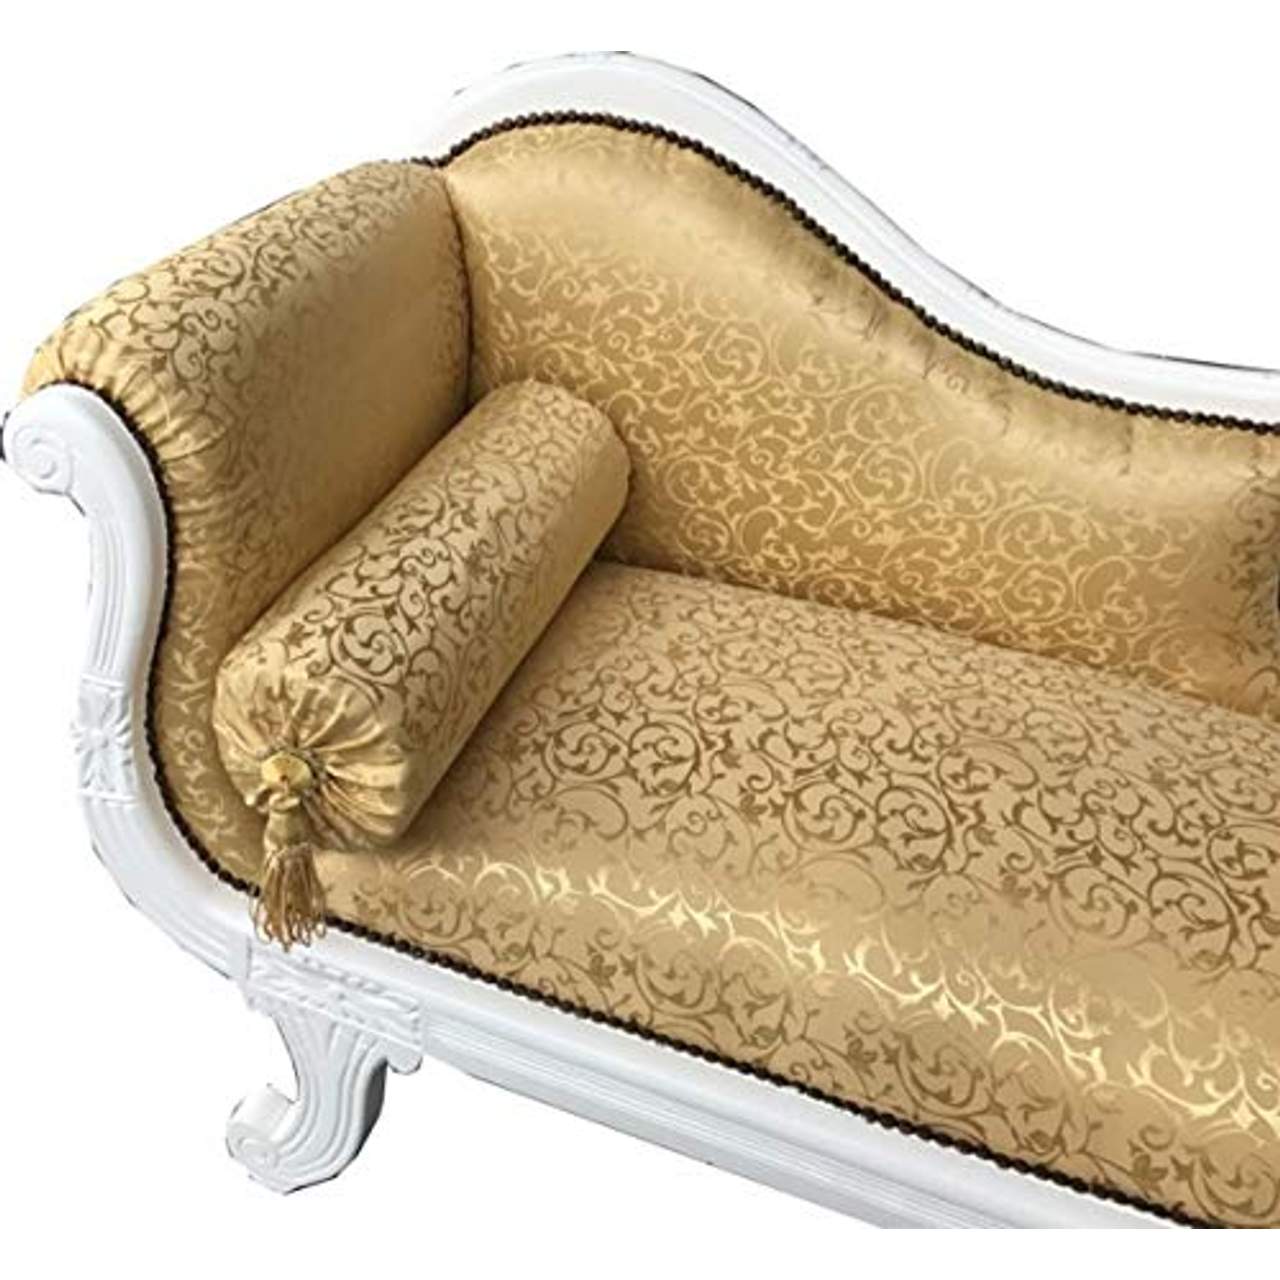 Casa Padrino Barock Chaiselongue Modell XXL Gold Muster